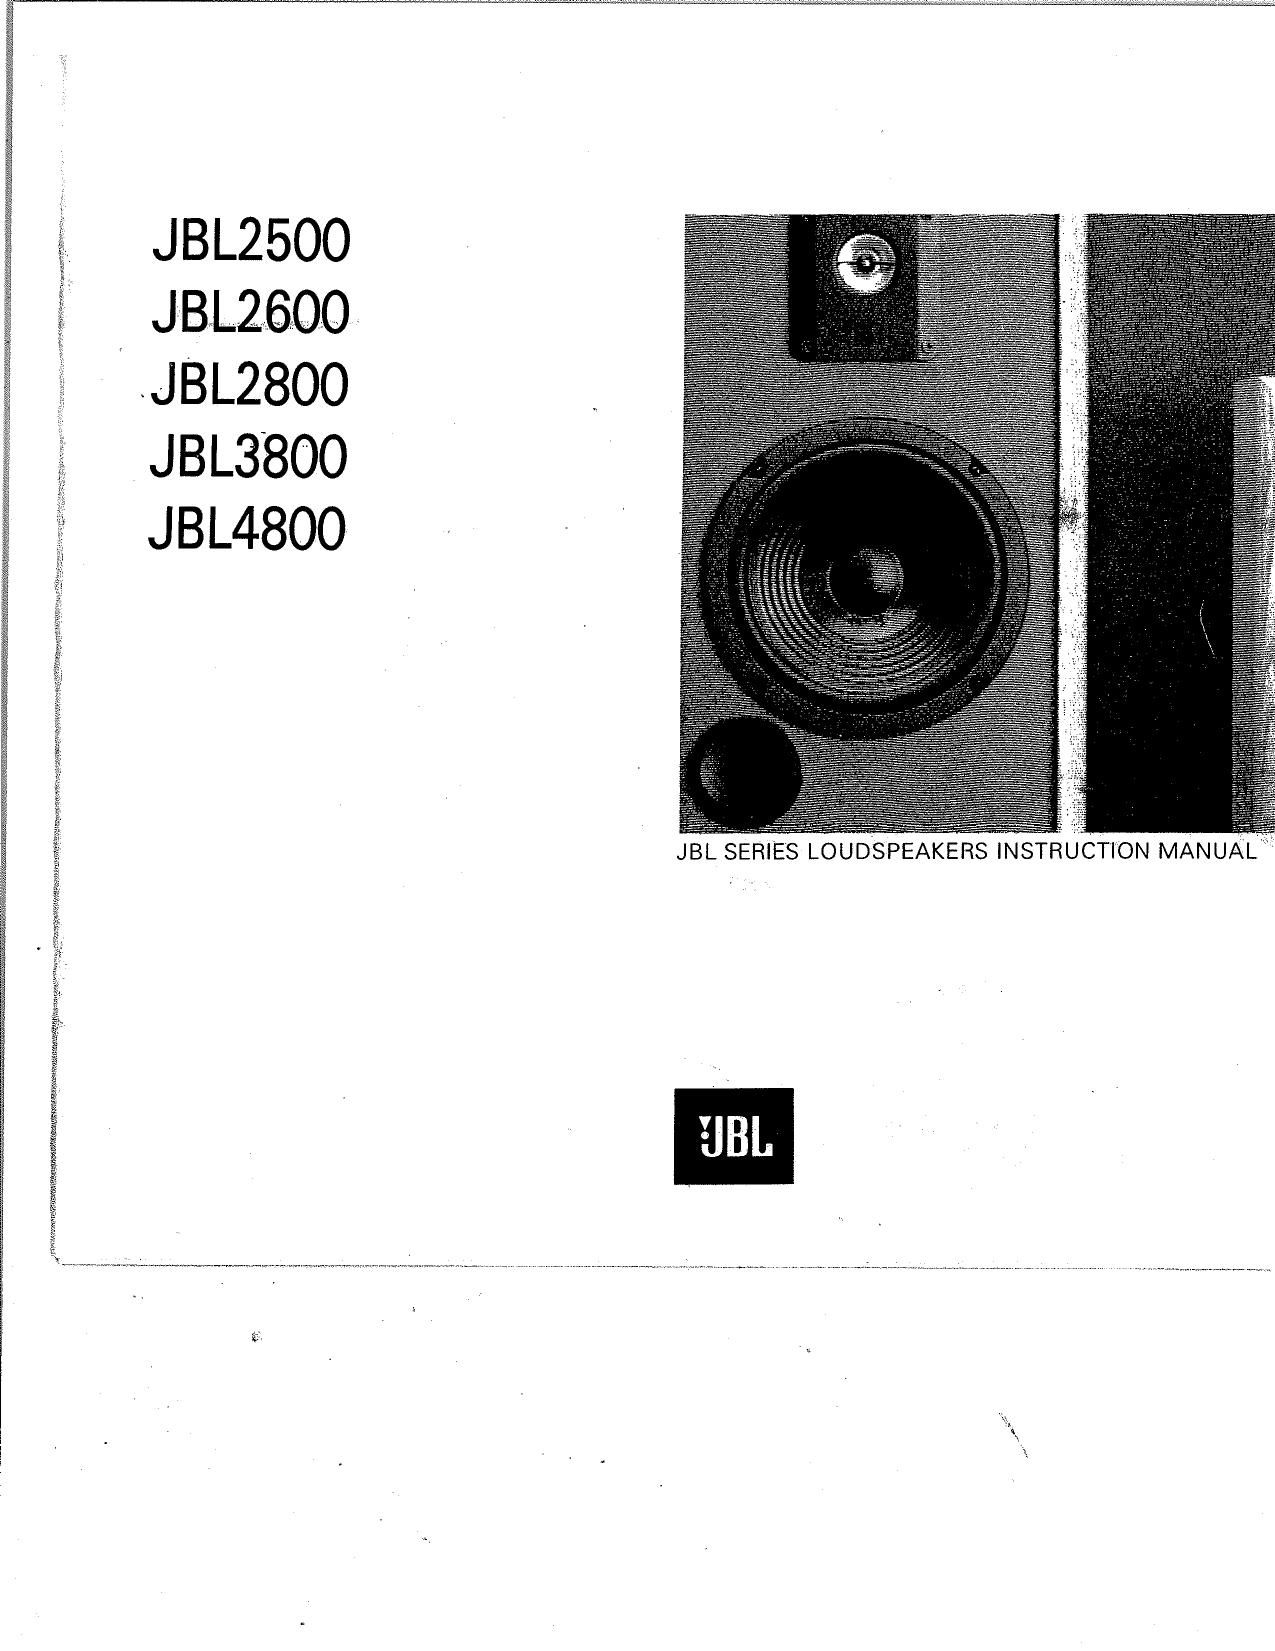 Jbl 4800 Owners Manual